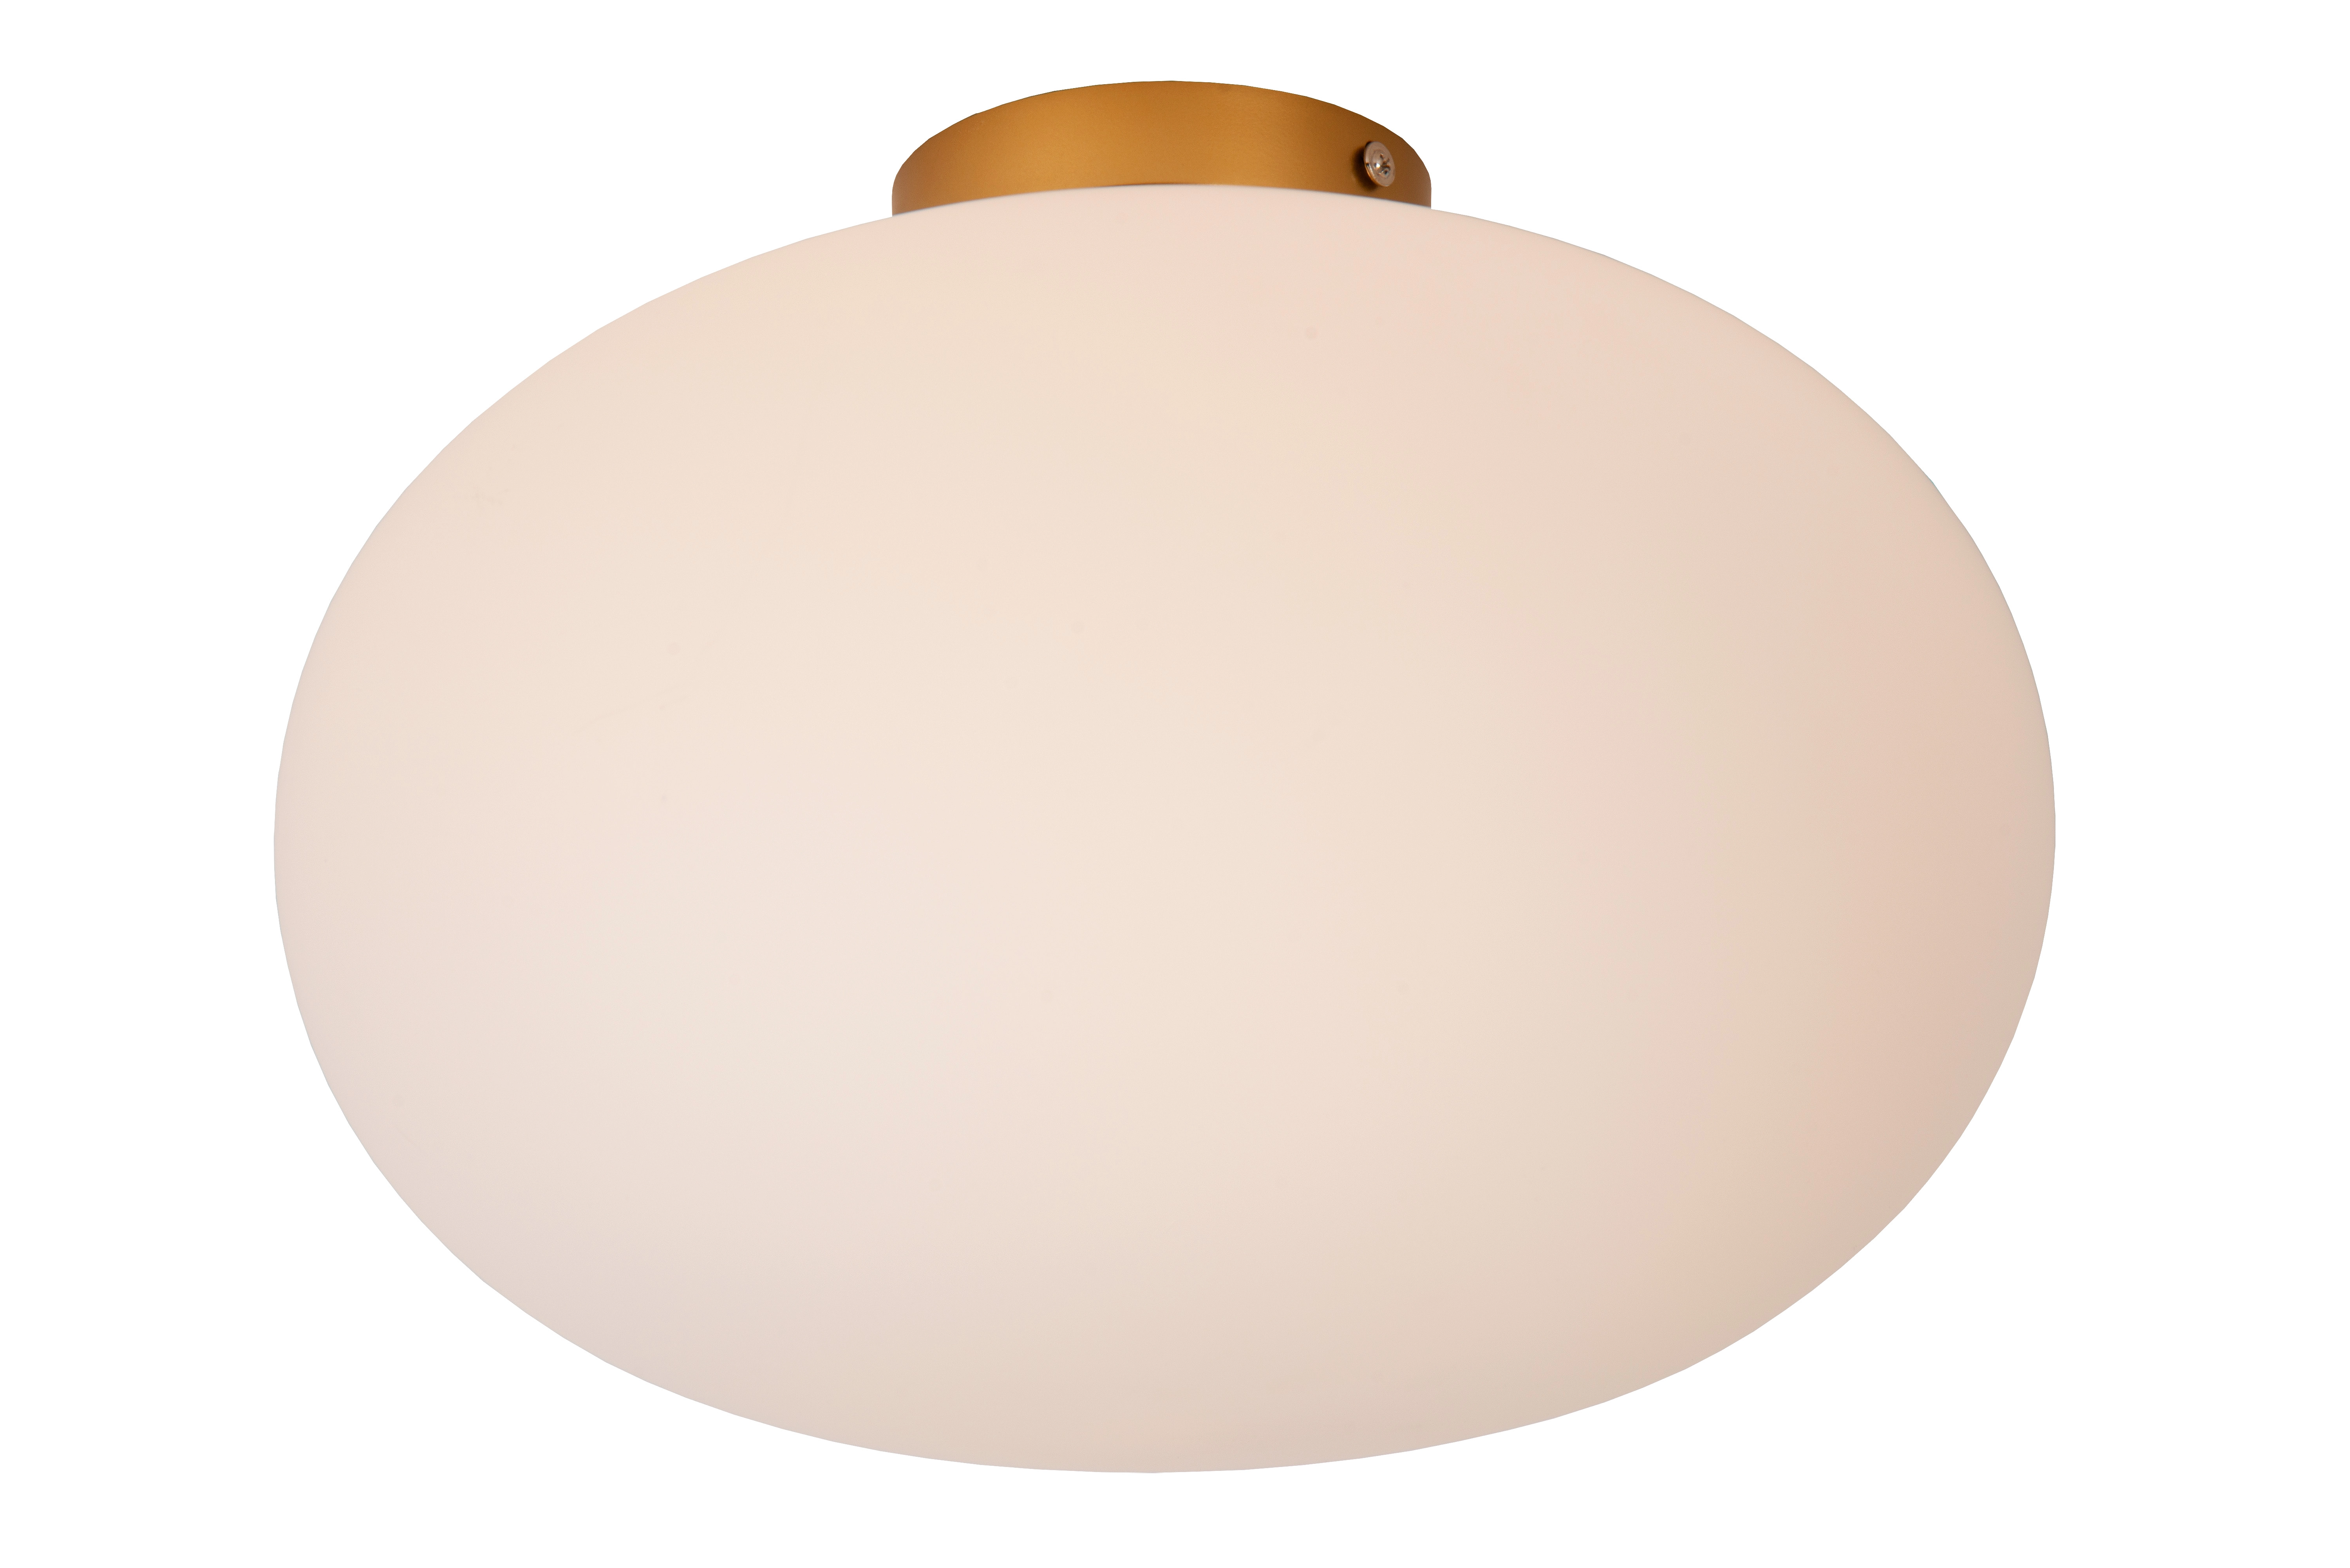 LU 21130/38/61 Lucide ELYSEE - Flush ceiling light - Ø 38 cm - 1xE27 - Opal